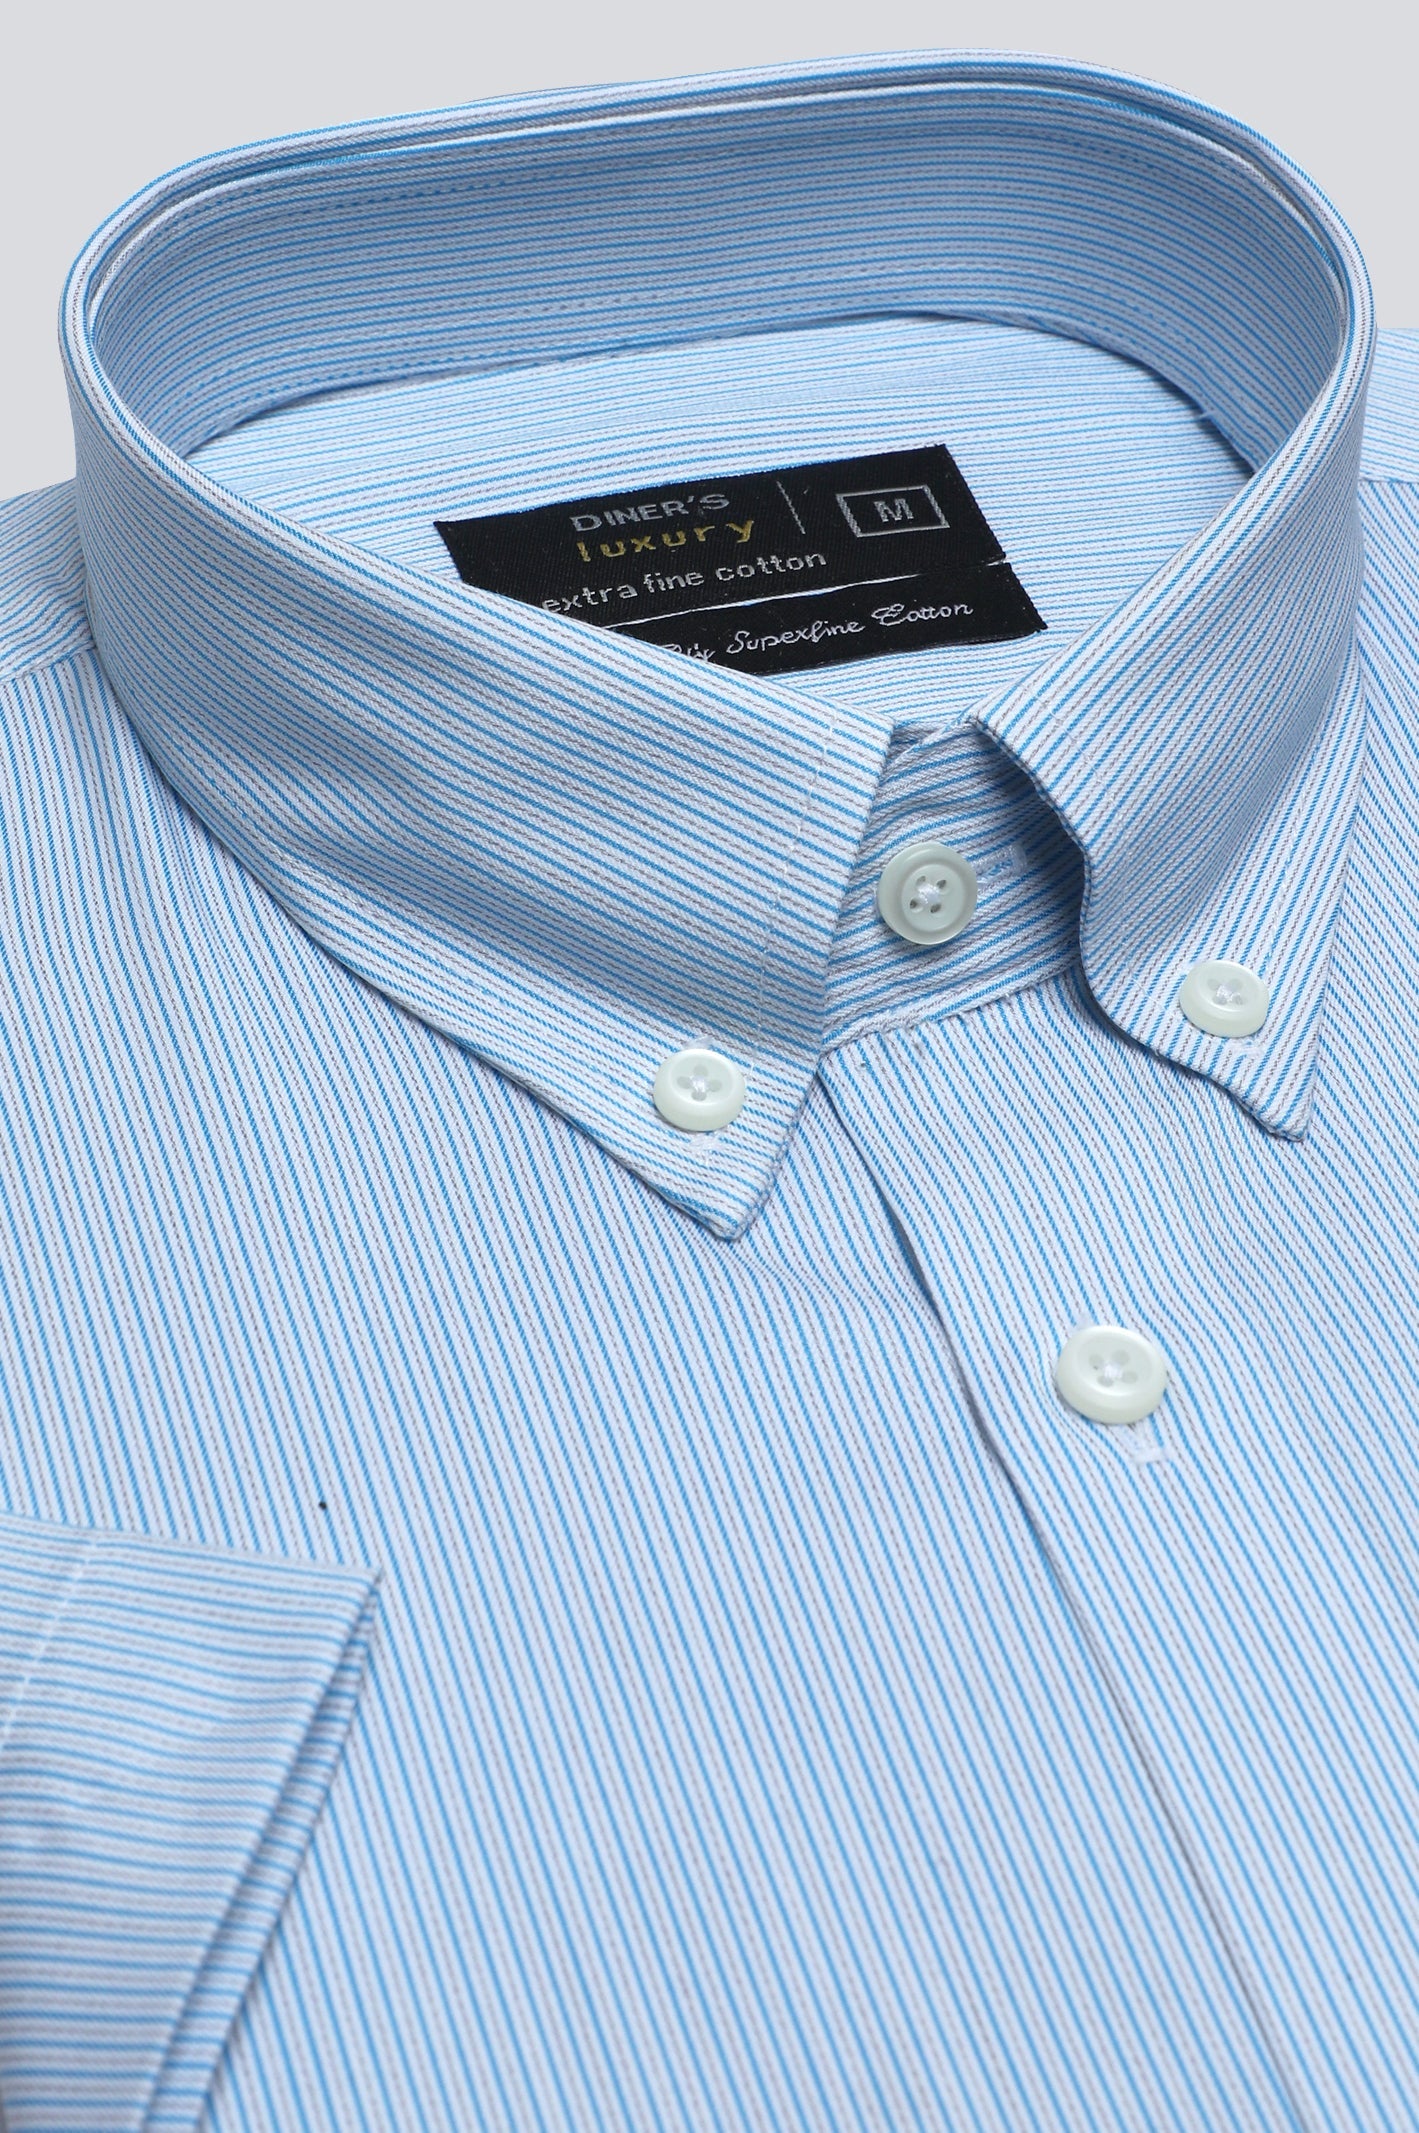 Teal Pin Stripe Formal Luxury Shirt (Half Sleeves) - Diners